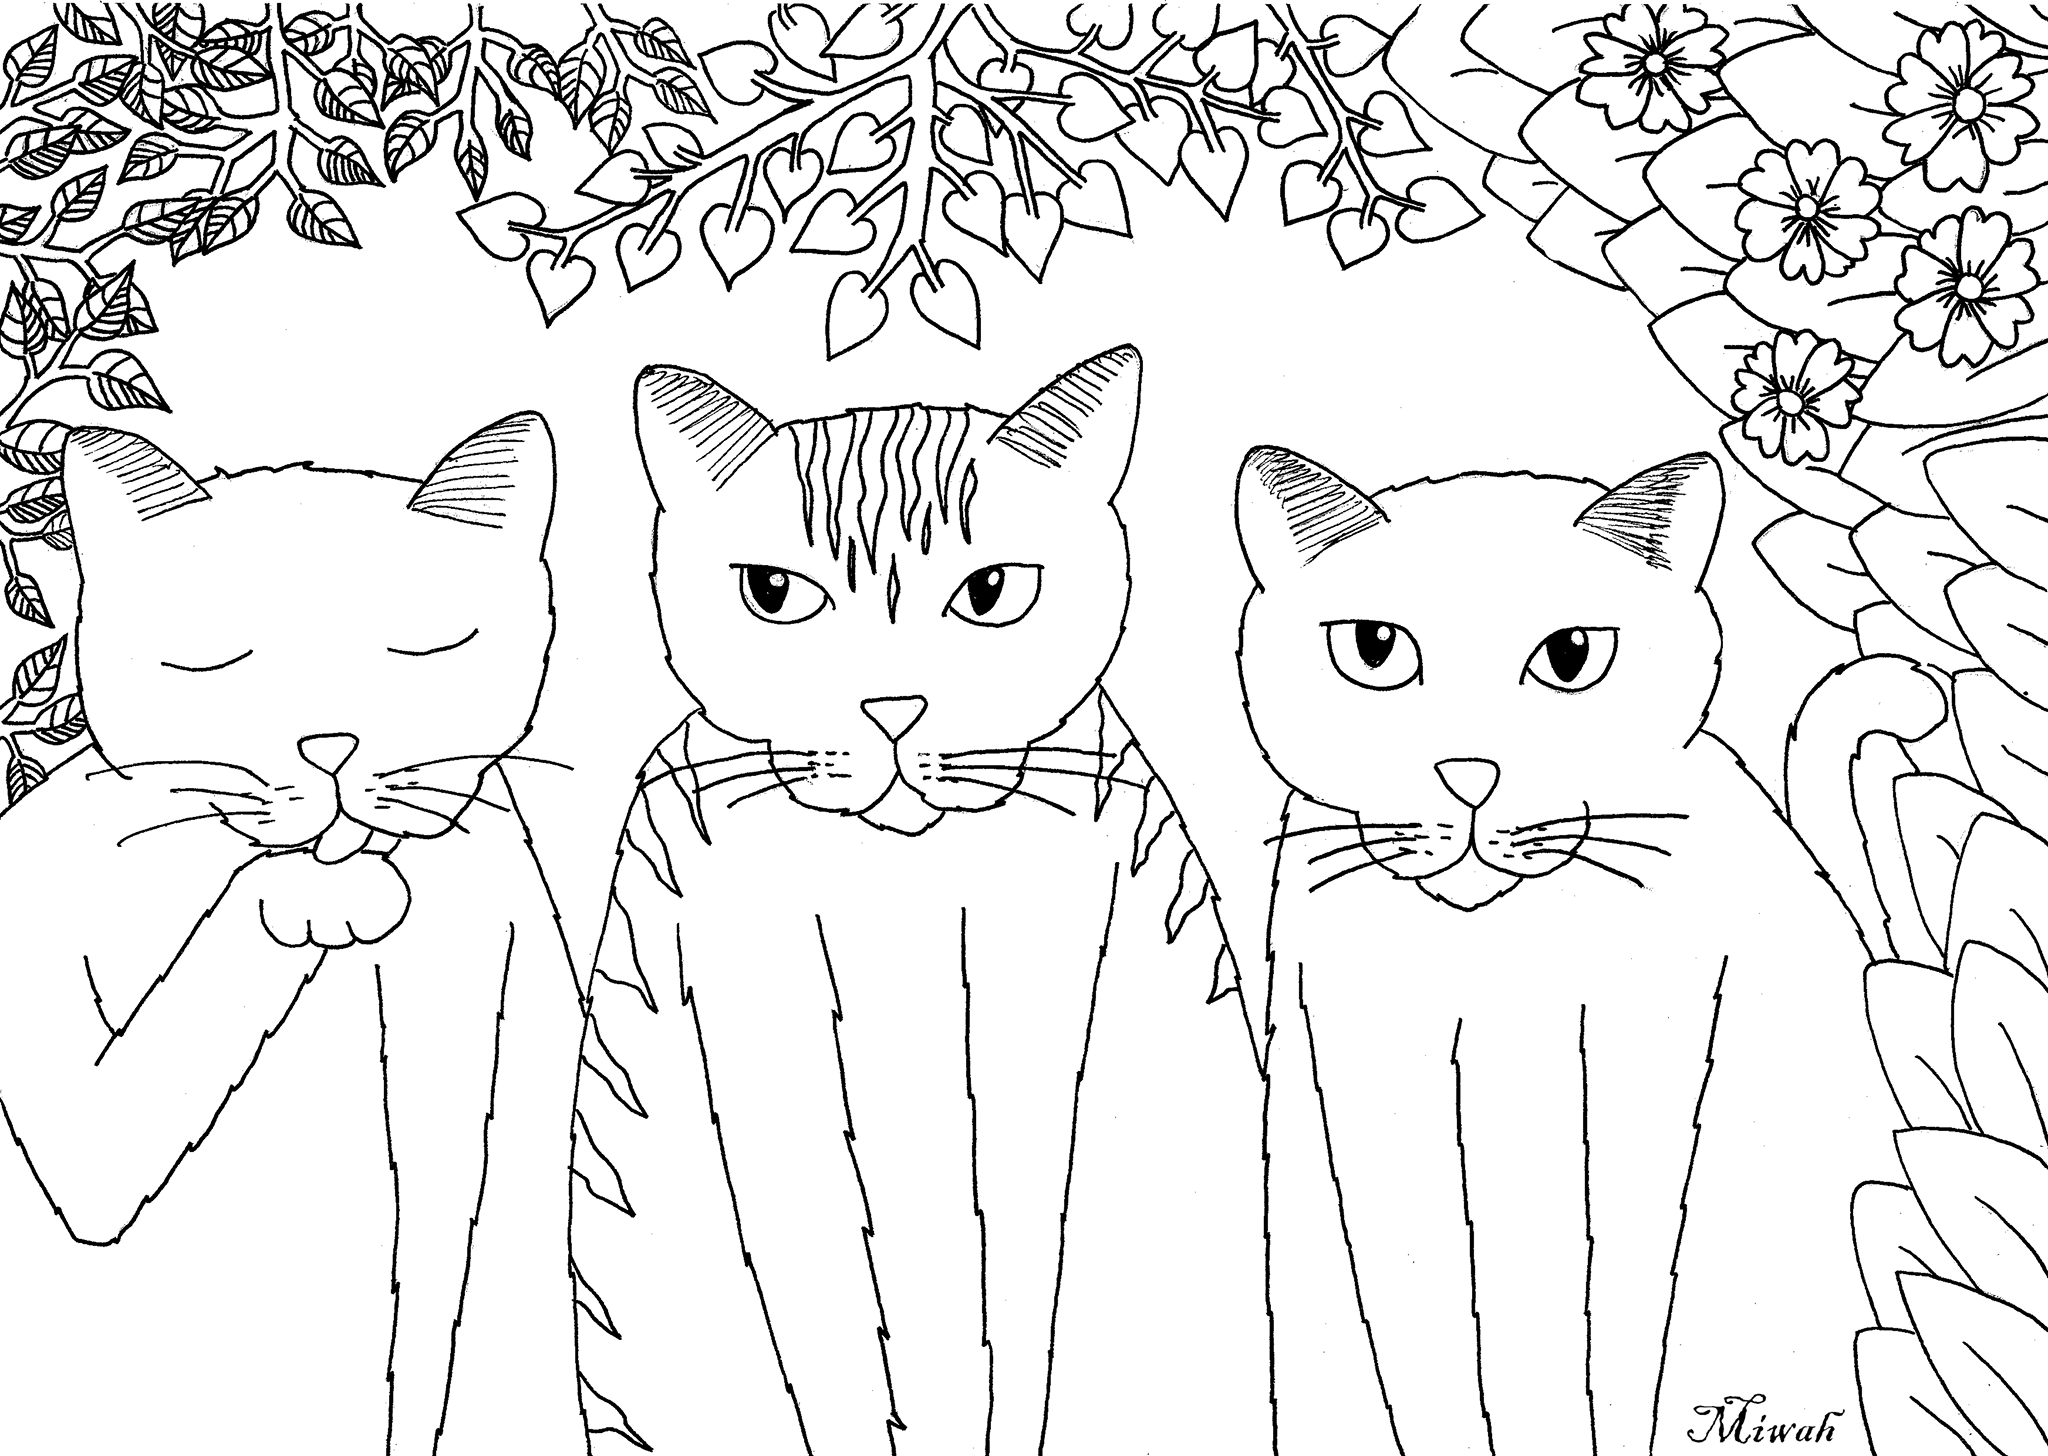 Página para colorir de gatos para crianças